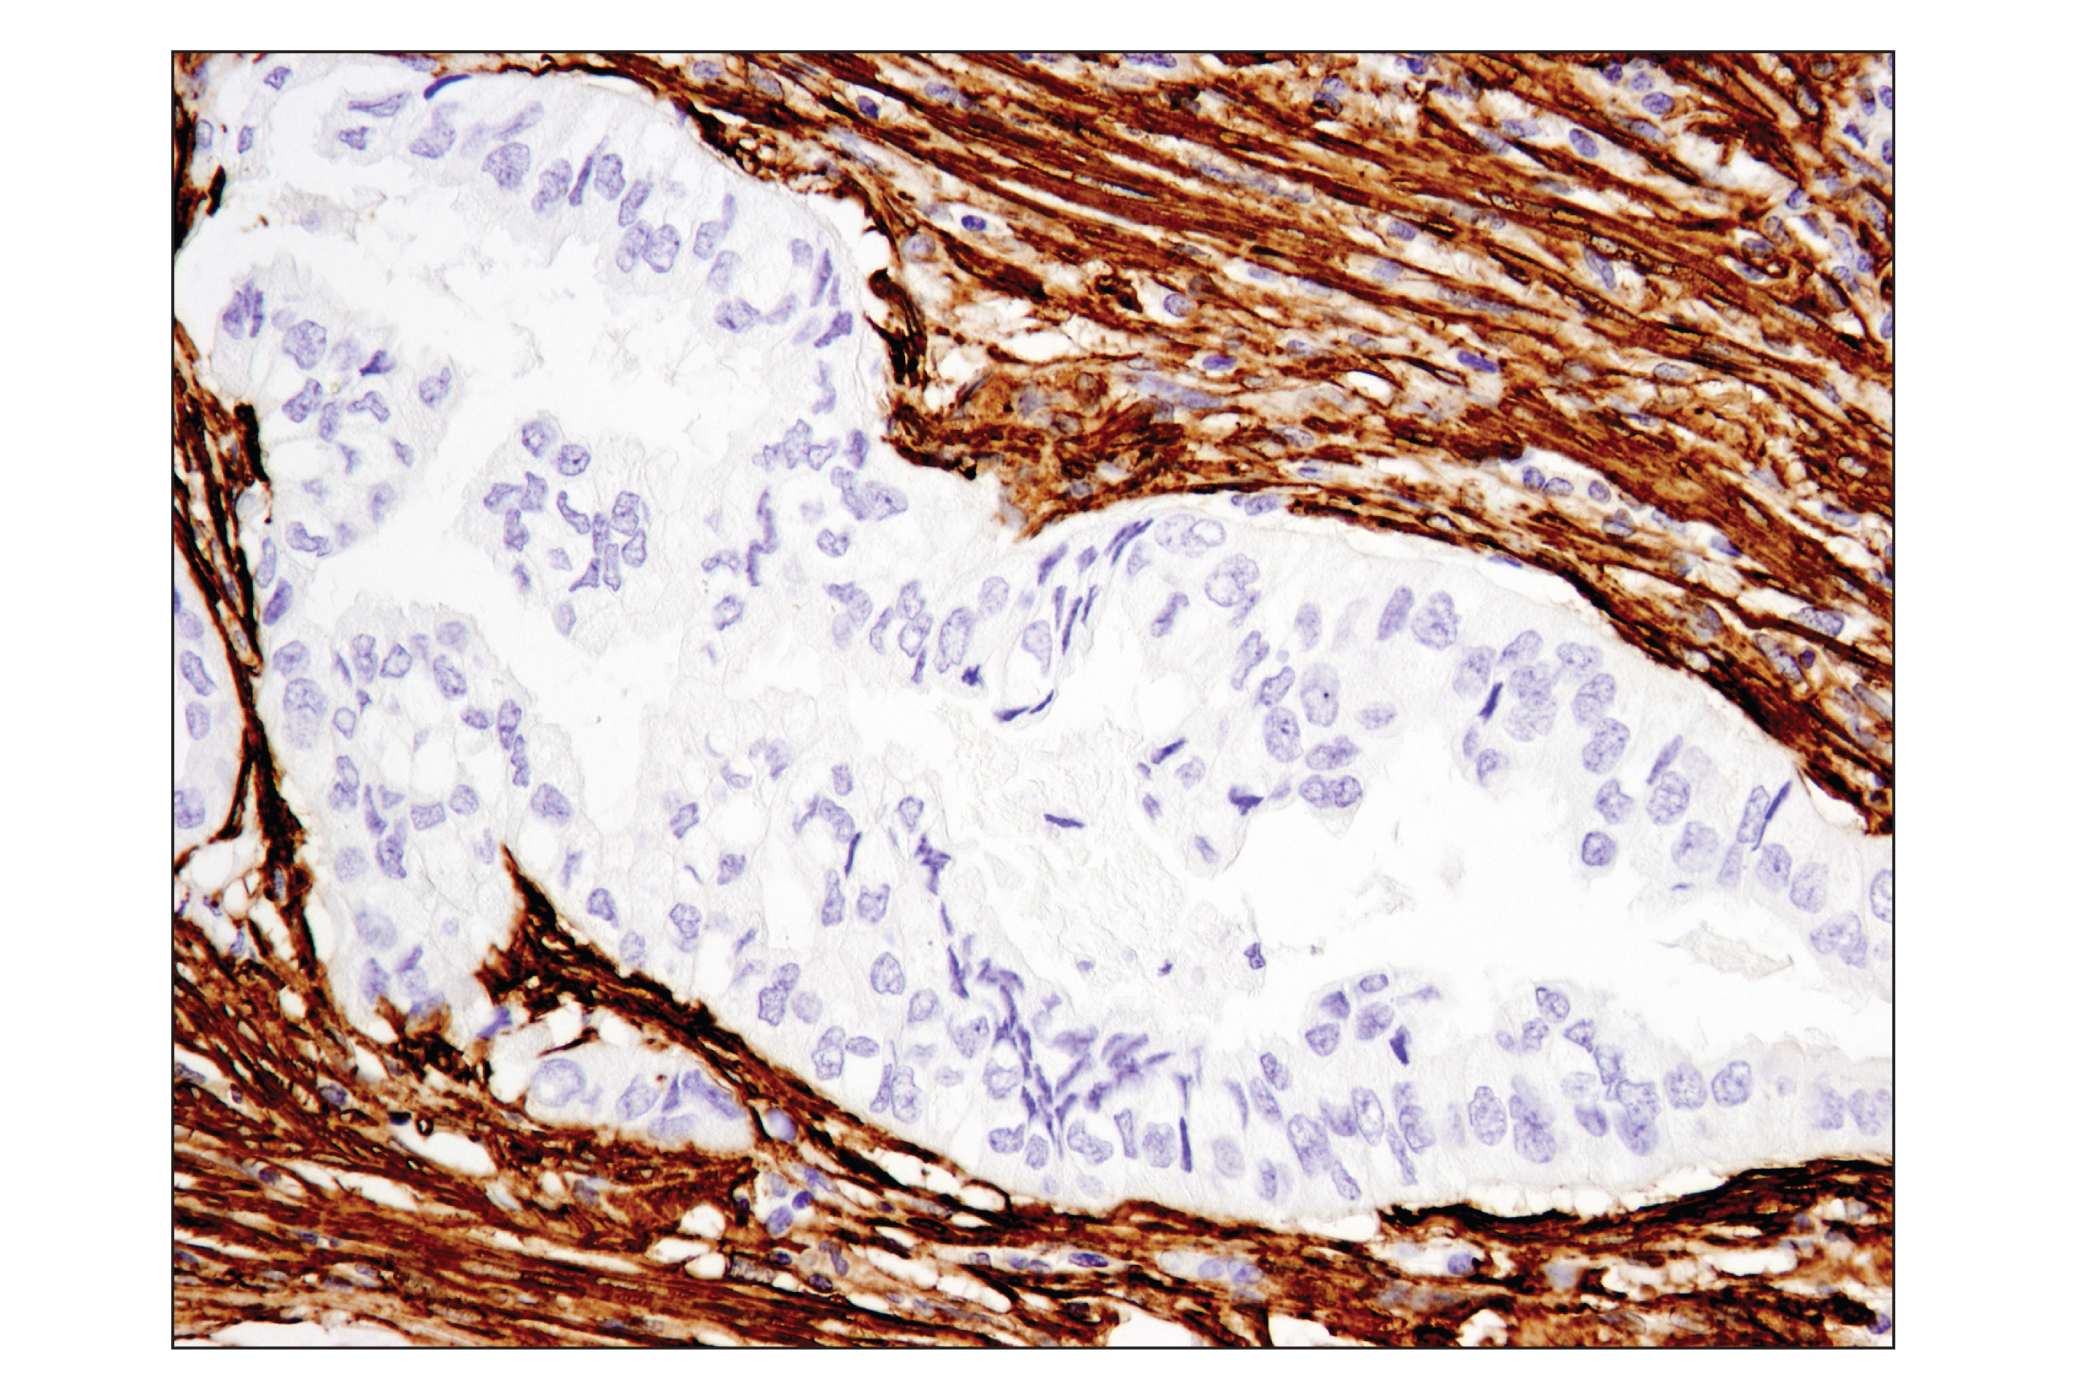  Image 34: TGF-β Fibrosis Pathway Antibody Sampler Kit